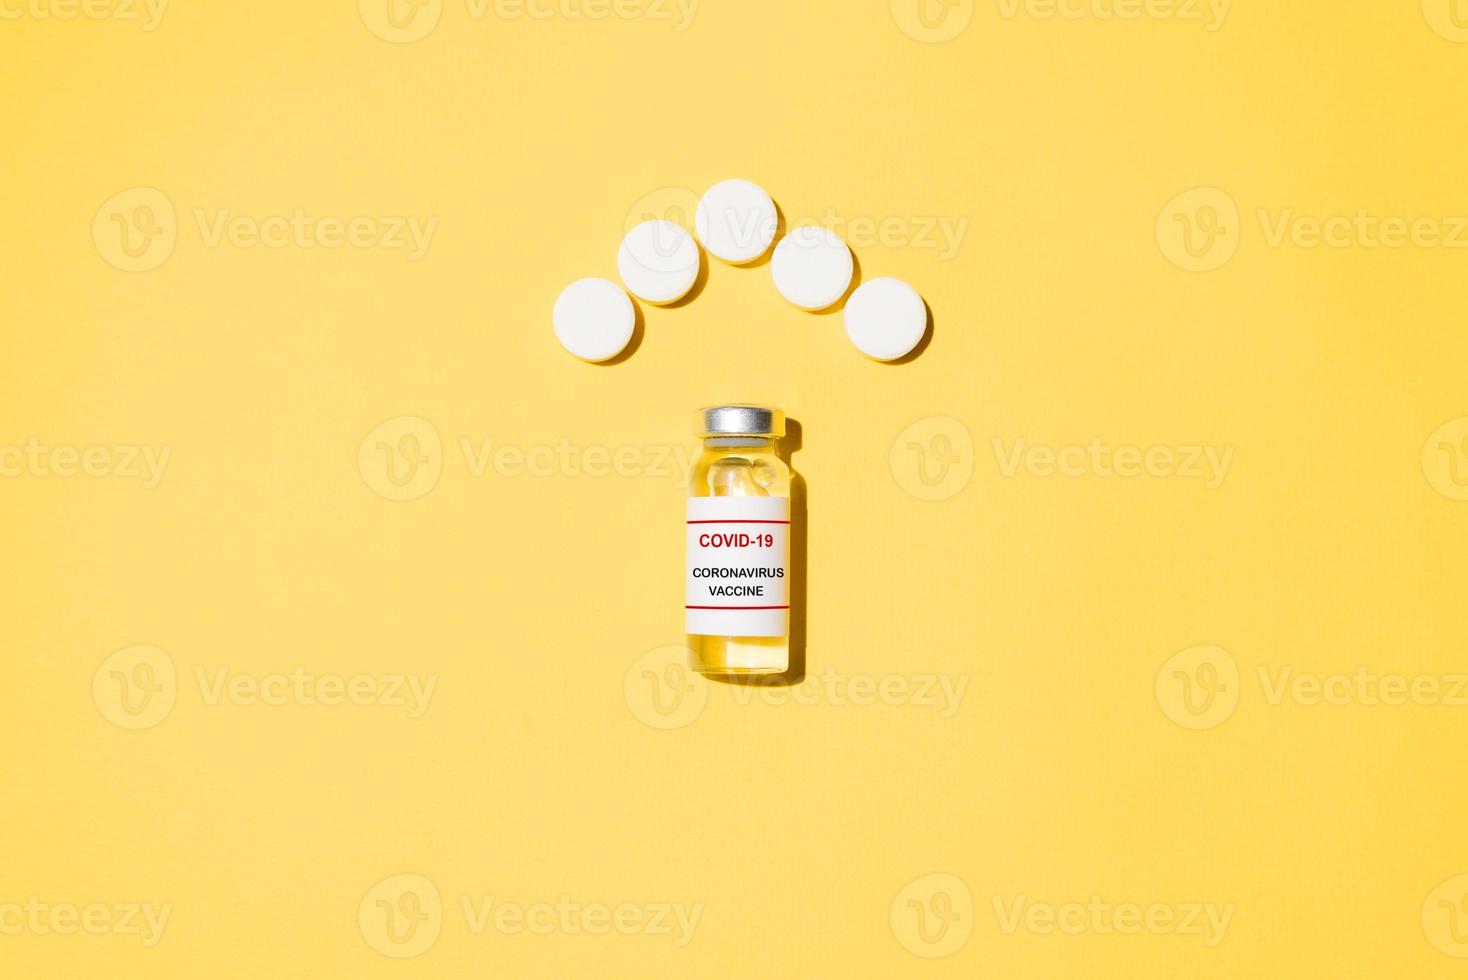 Fläschchen mit Covid-19-Impfstoff und Tabletten in Form eines Dachhauses auf gelbem Hintergrund, flach gelegt. Virenschutzkonzept foto